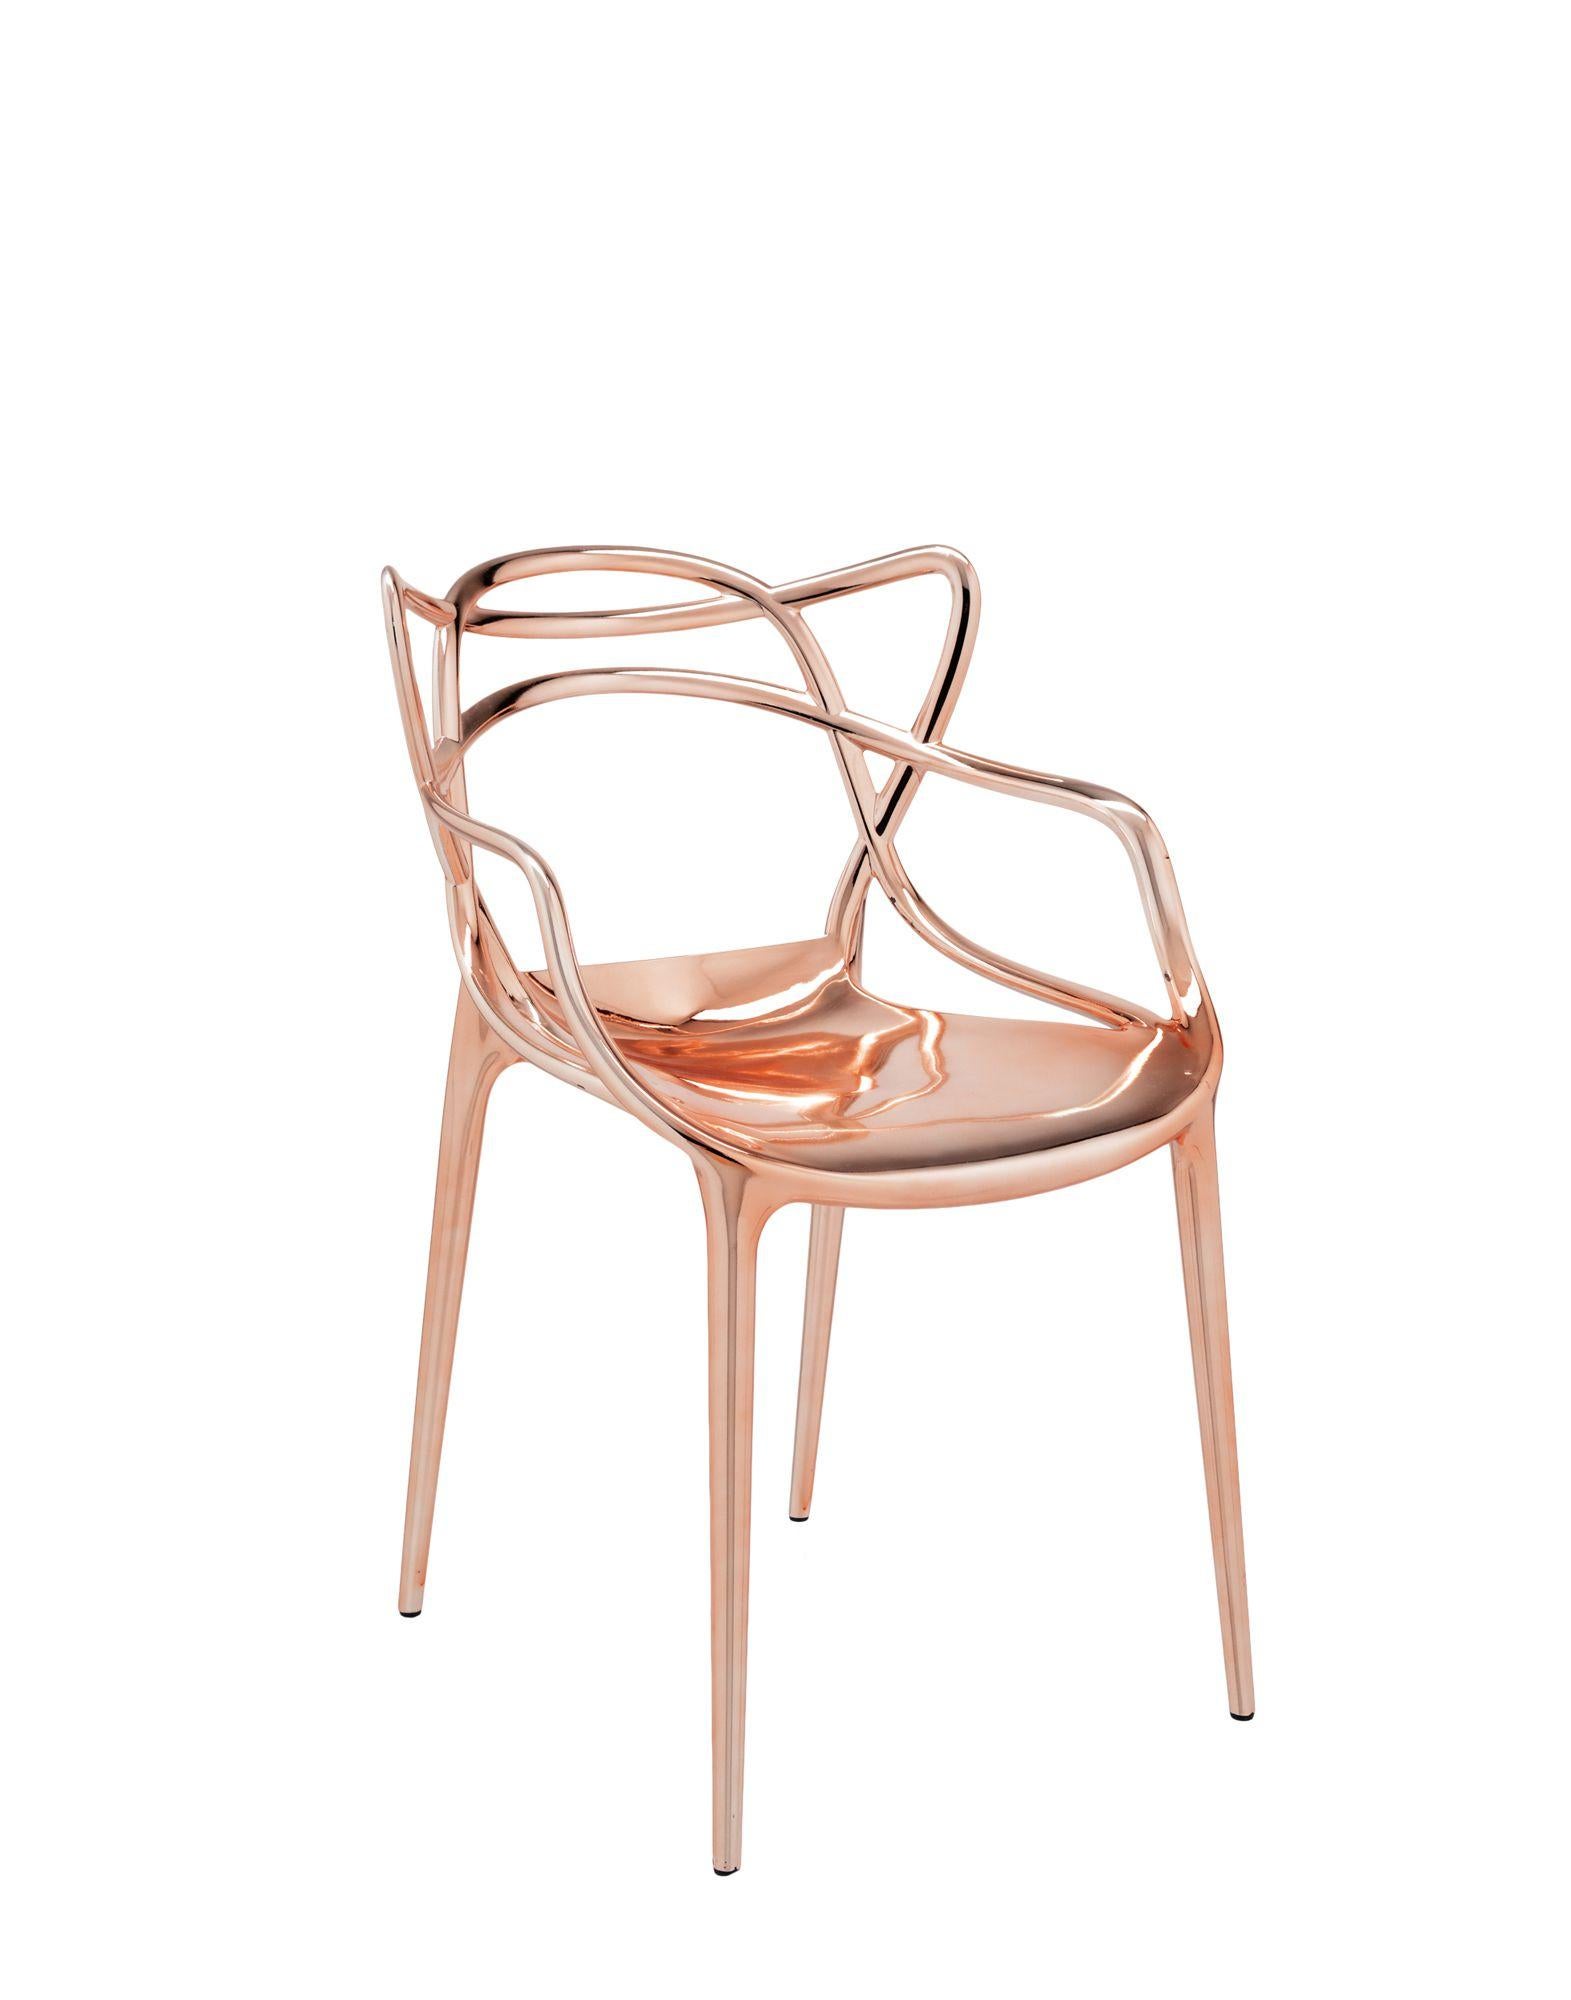 La chaise Masters est un hommage puissant à trois chaises symboliques, relues et réinterprétées par le génie créatif de Starck. Les silhouettes incomparables de la Série 7 d'Arne Jacobsen, du fauteuil Tulip d'Eero Saarinen et de la chaise eiffel de